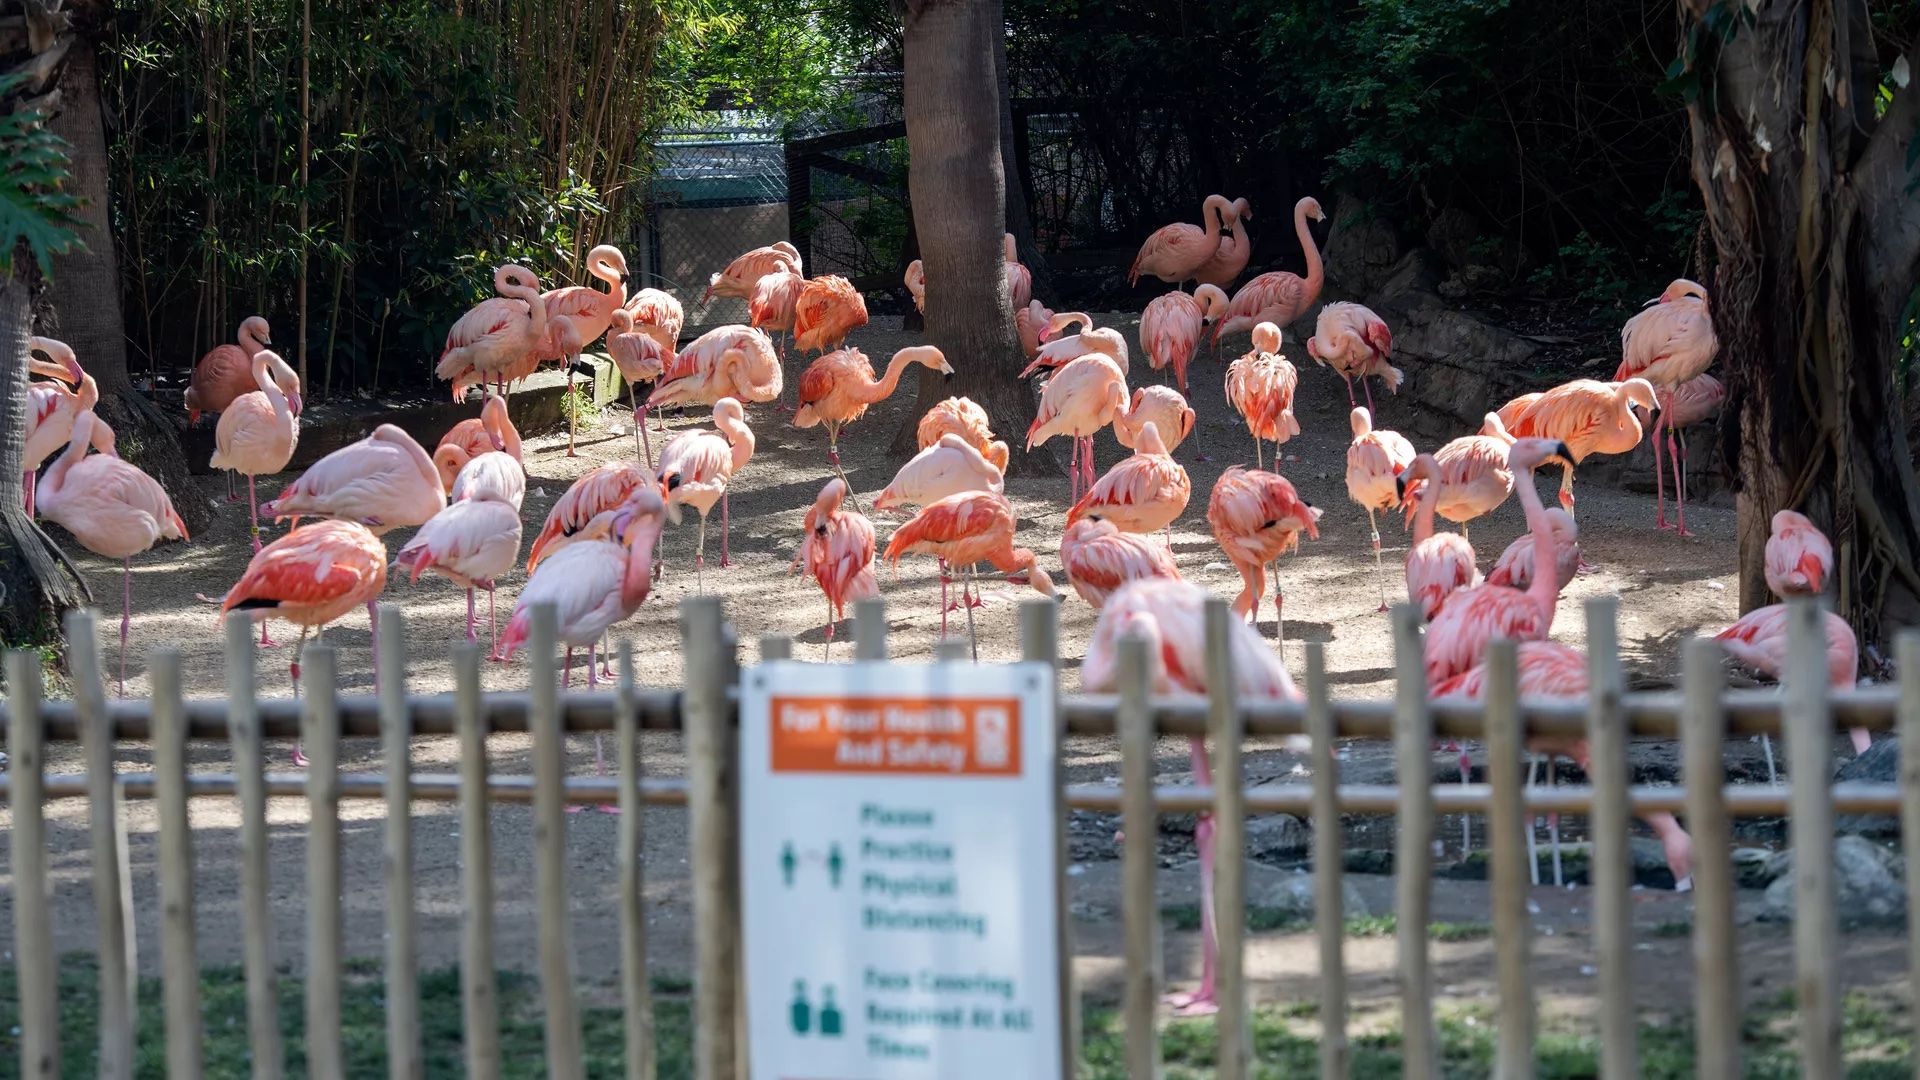 Flamingos at the Los Angeles Zoo.